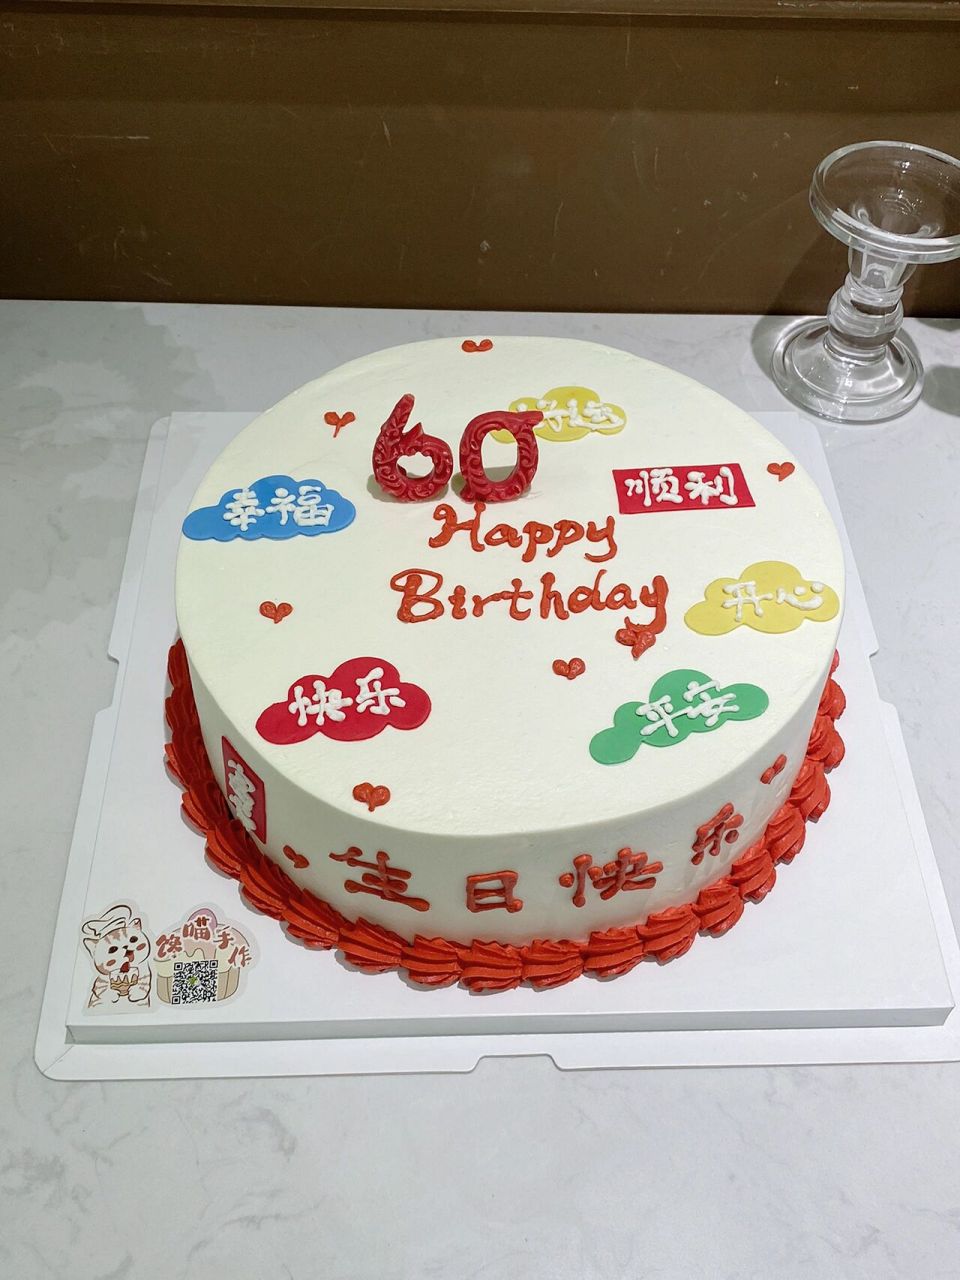 男士60岁生日蛋糕样式图片